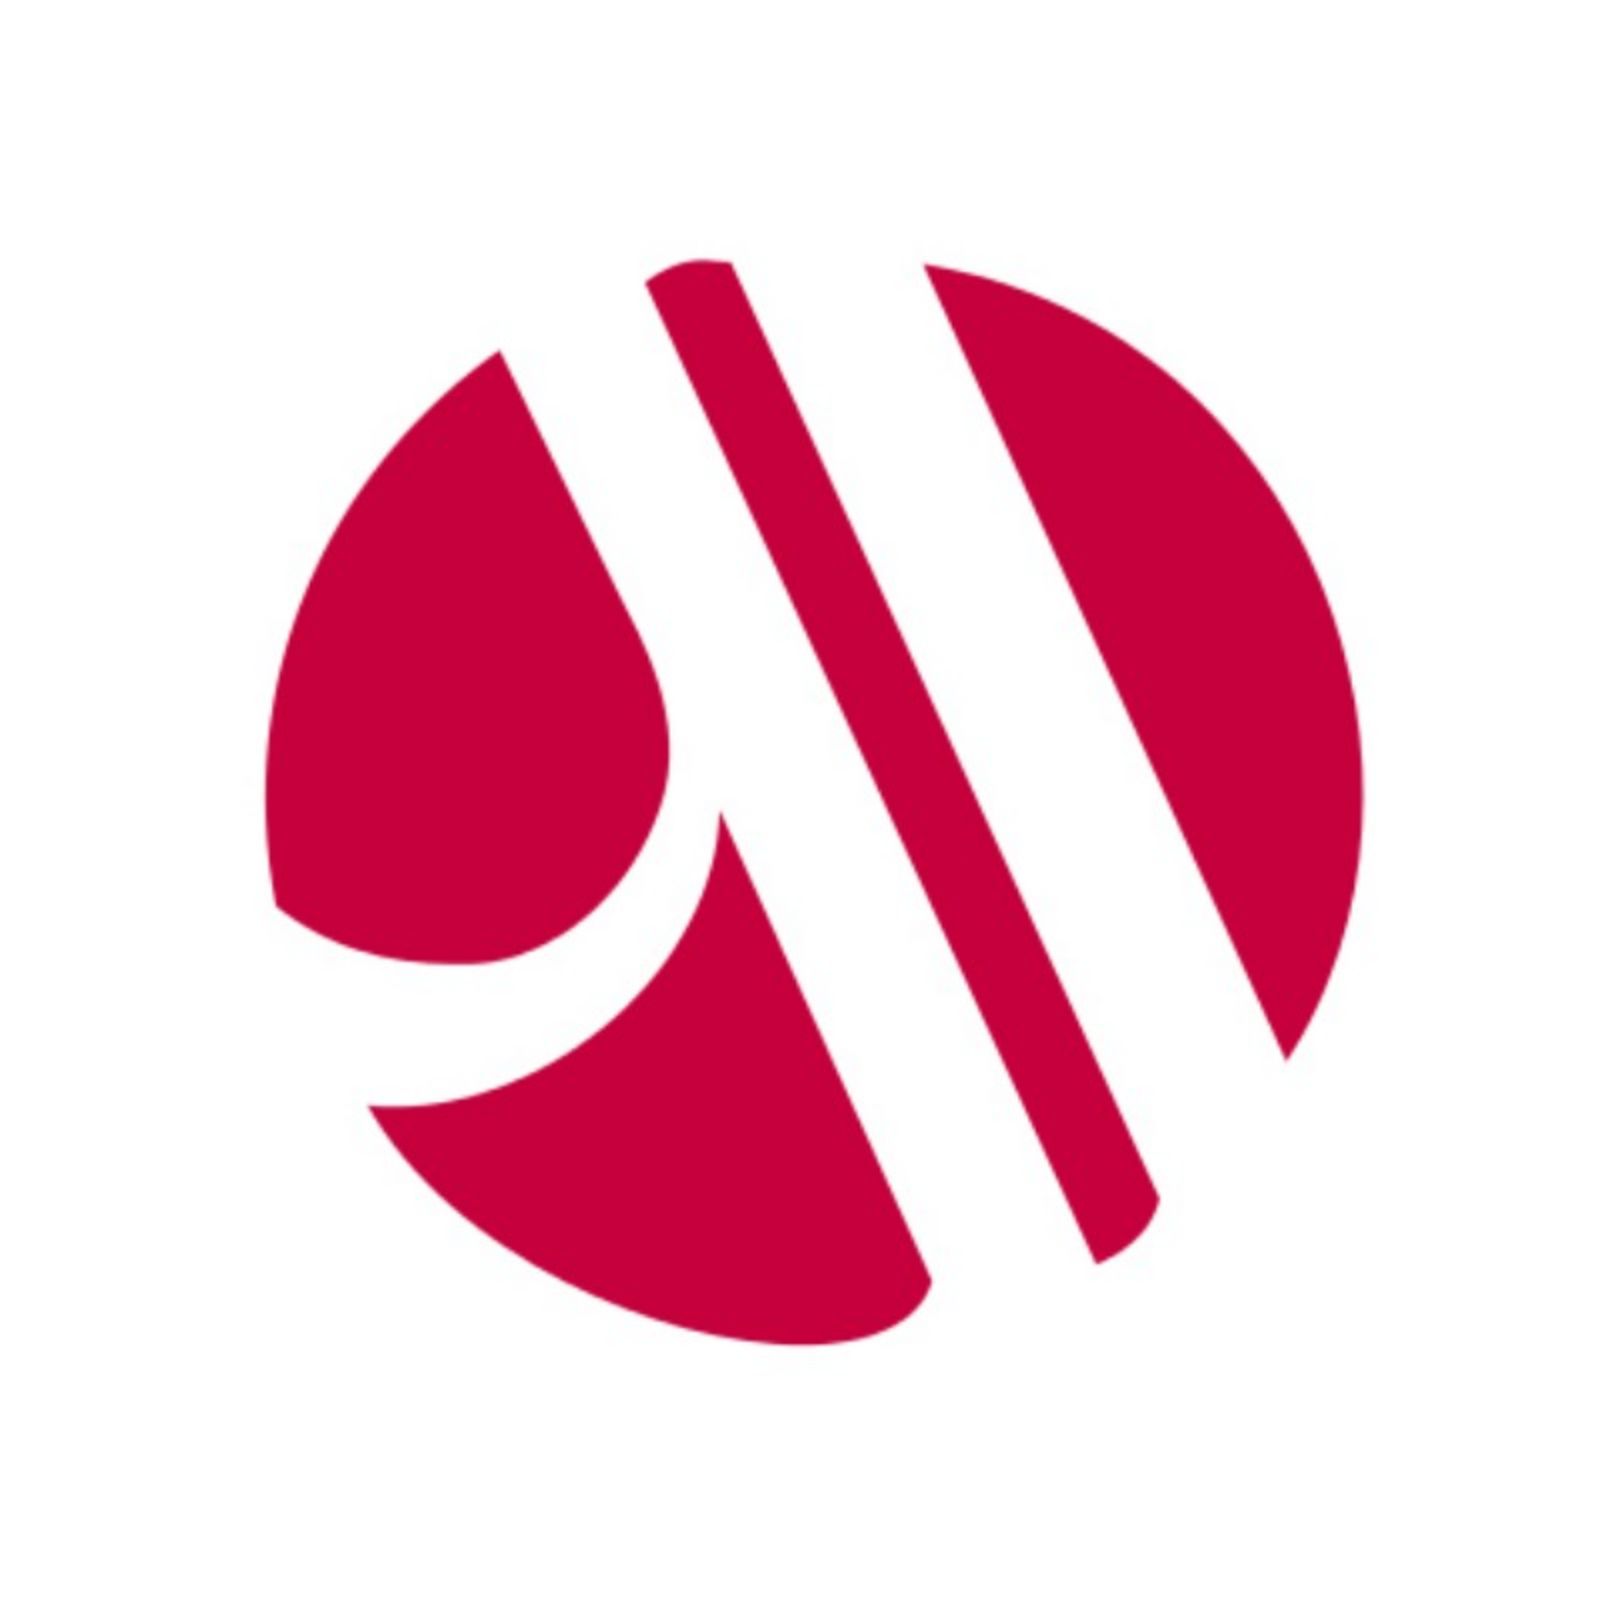 万豪国际酒店集团logo图片